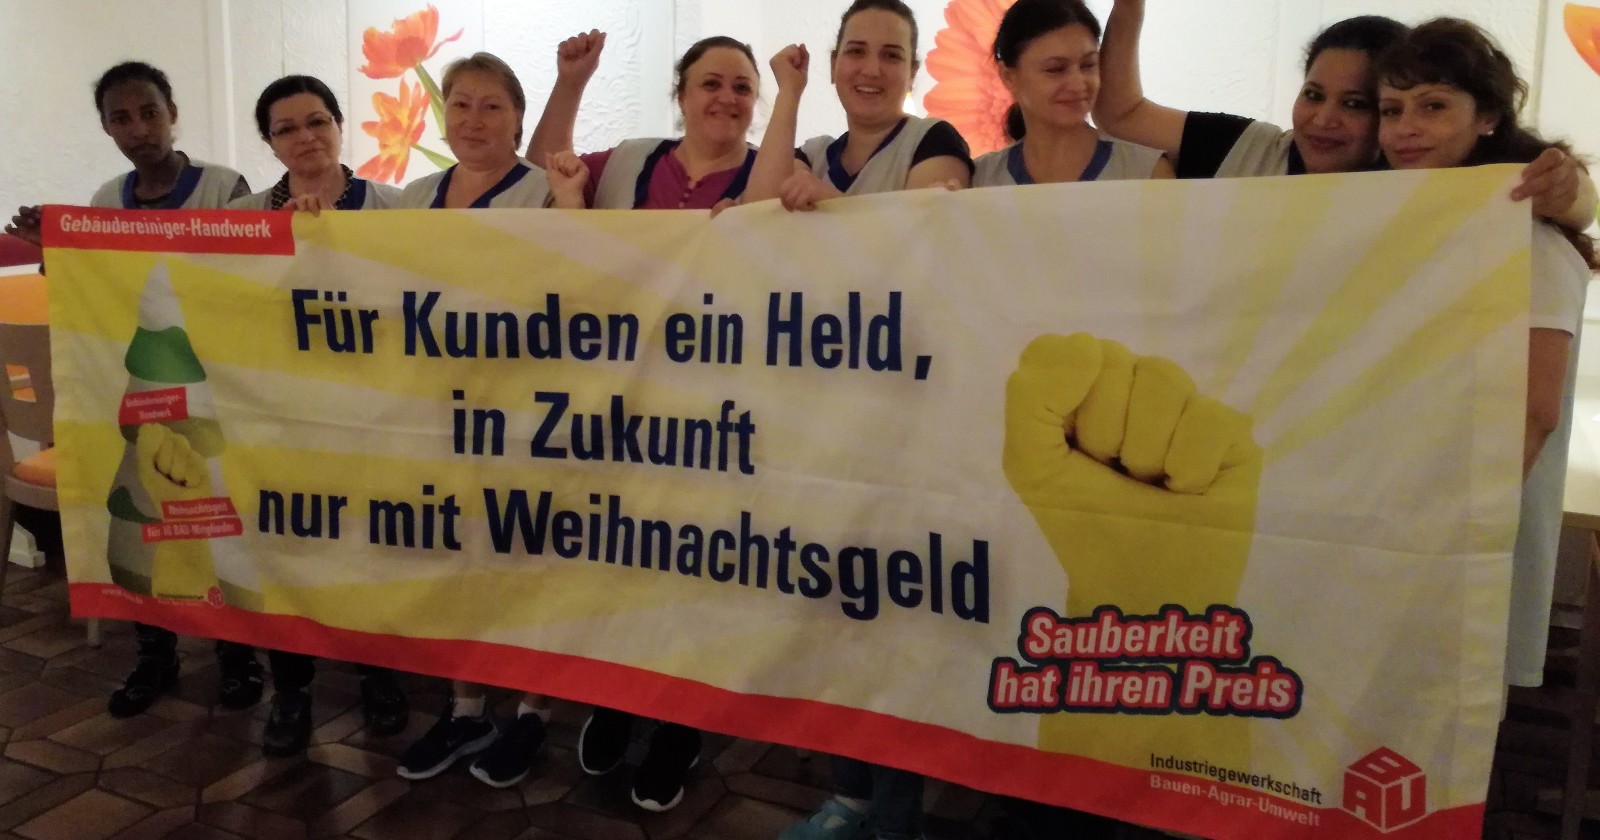 Kolleginnen von Uniserv in der Wickerklinik Bad Homburg: "Her mit dem Weihanchtsgeld! "